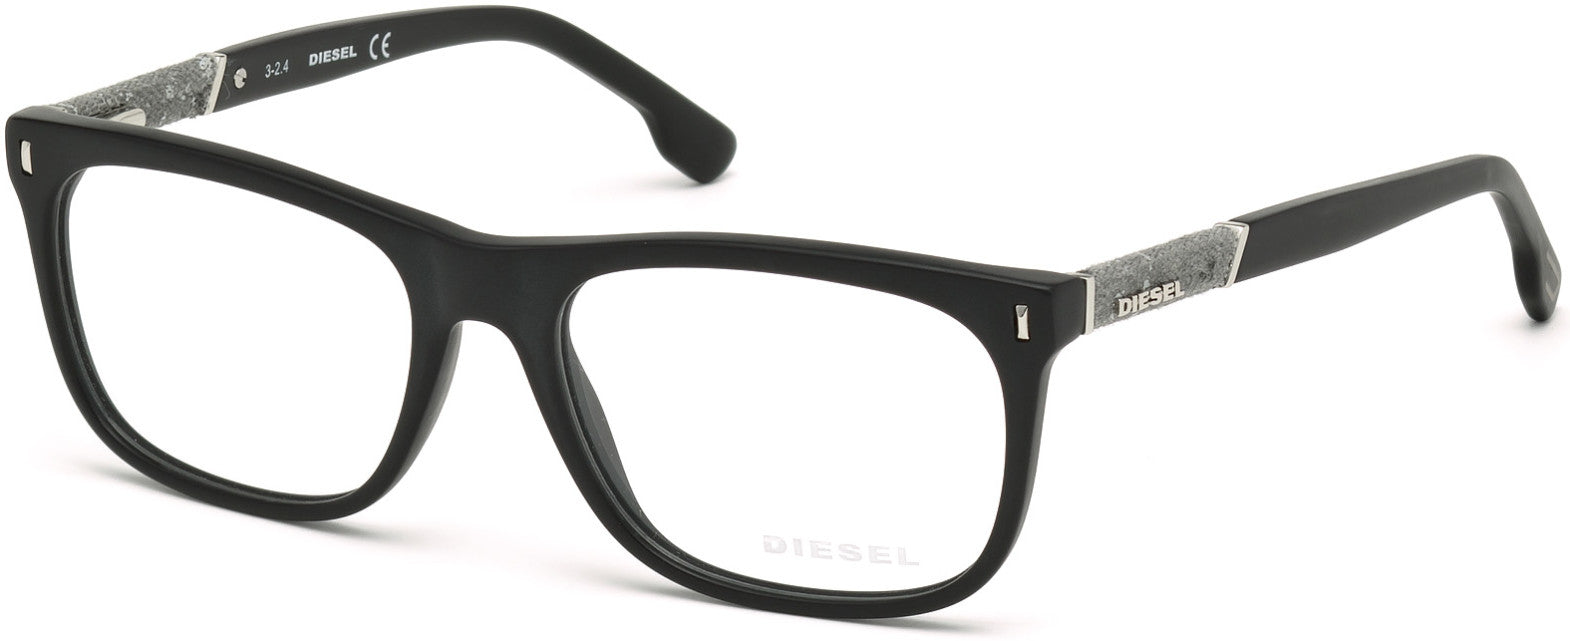 Diesel DL5157 Geometric Eyeglasses 002-002 - Matte Black